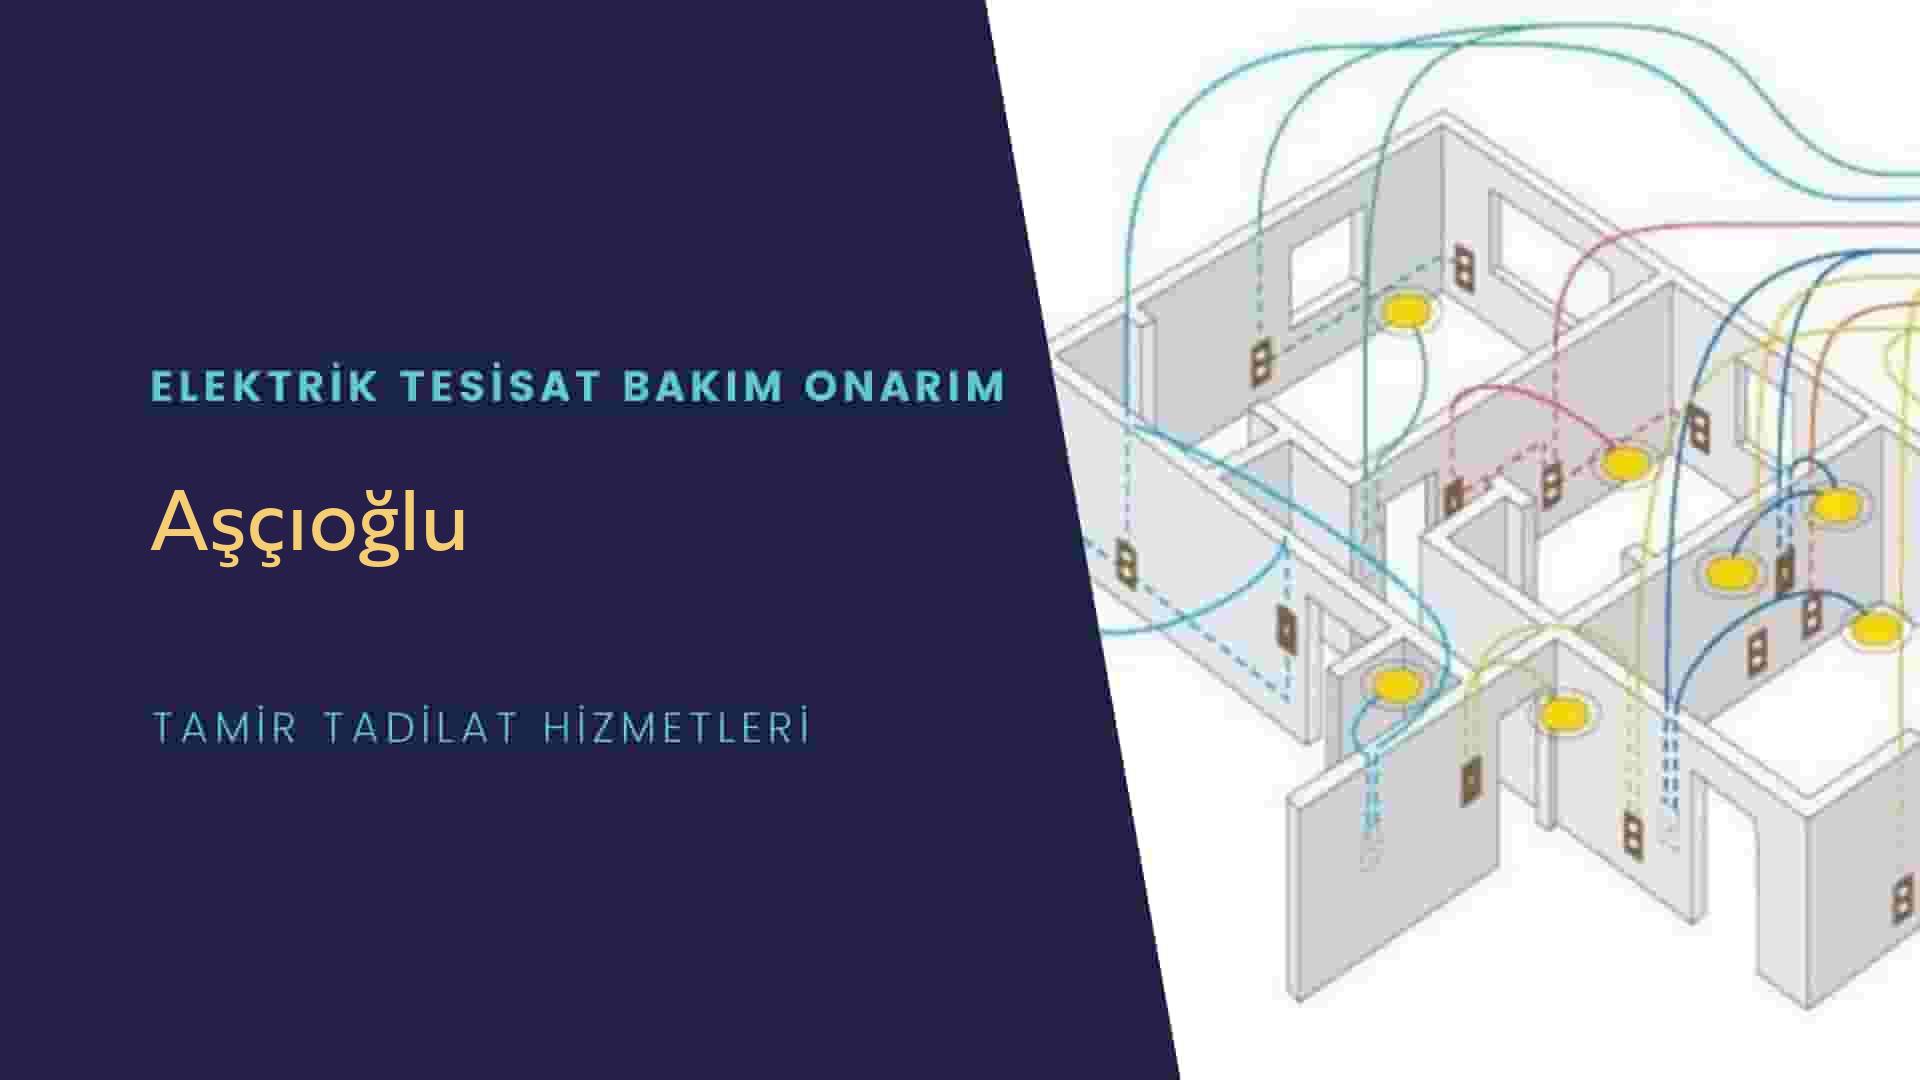 Aşçıoğlu'da elektrik tesisatı ustalarımı arıyorsunuz doğru adrestenizi Aşçıoğlu elektrik tesisatı ustalarımız 7/24 sizlere hizmet vermekten mutluluk duyar.